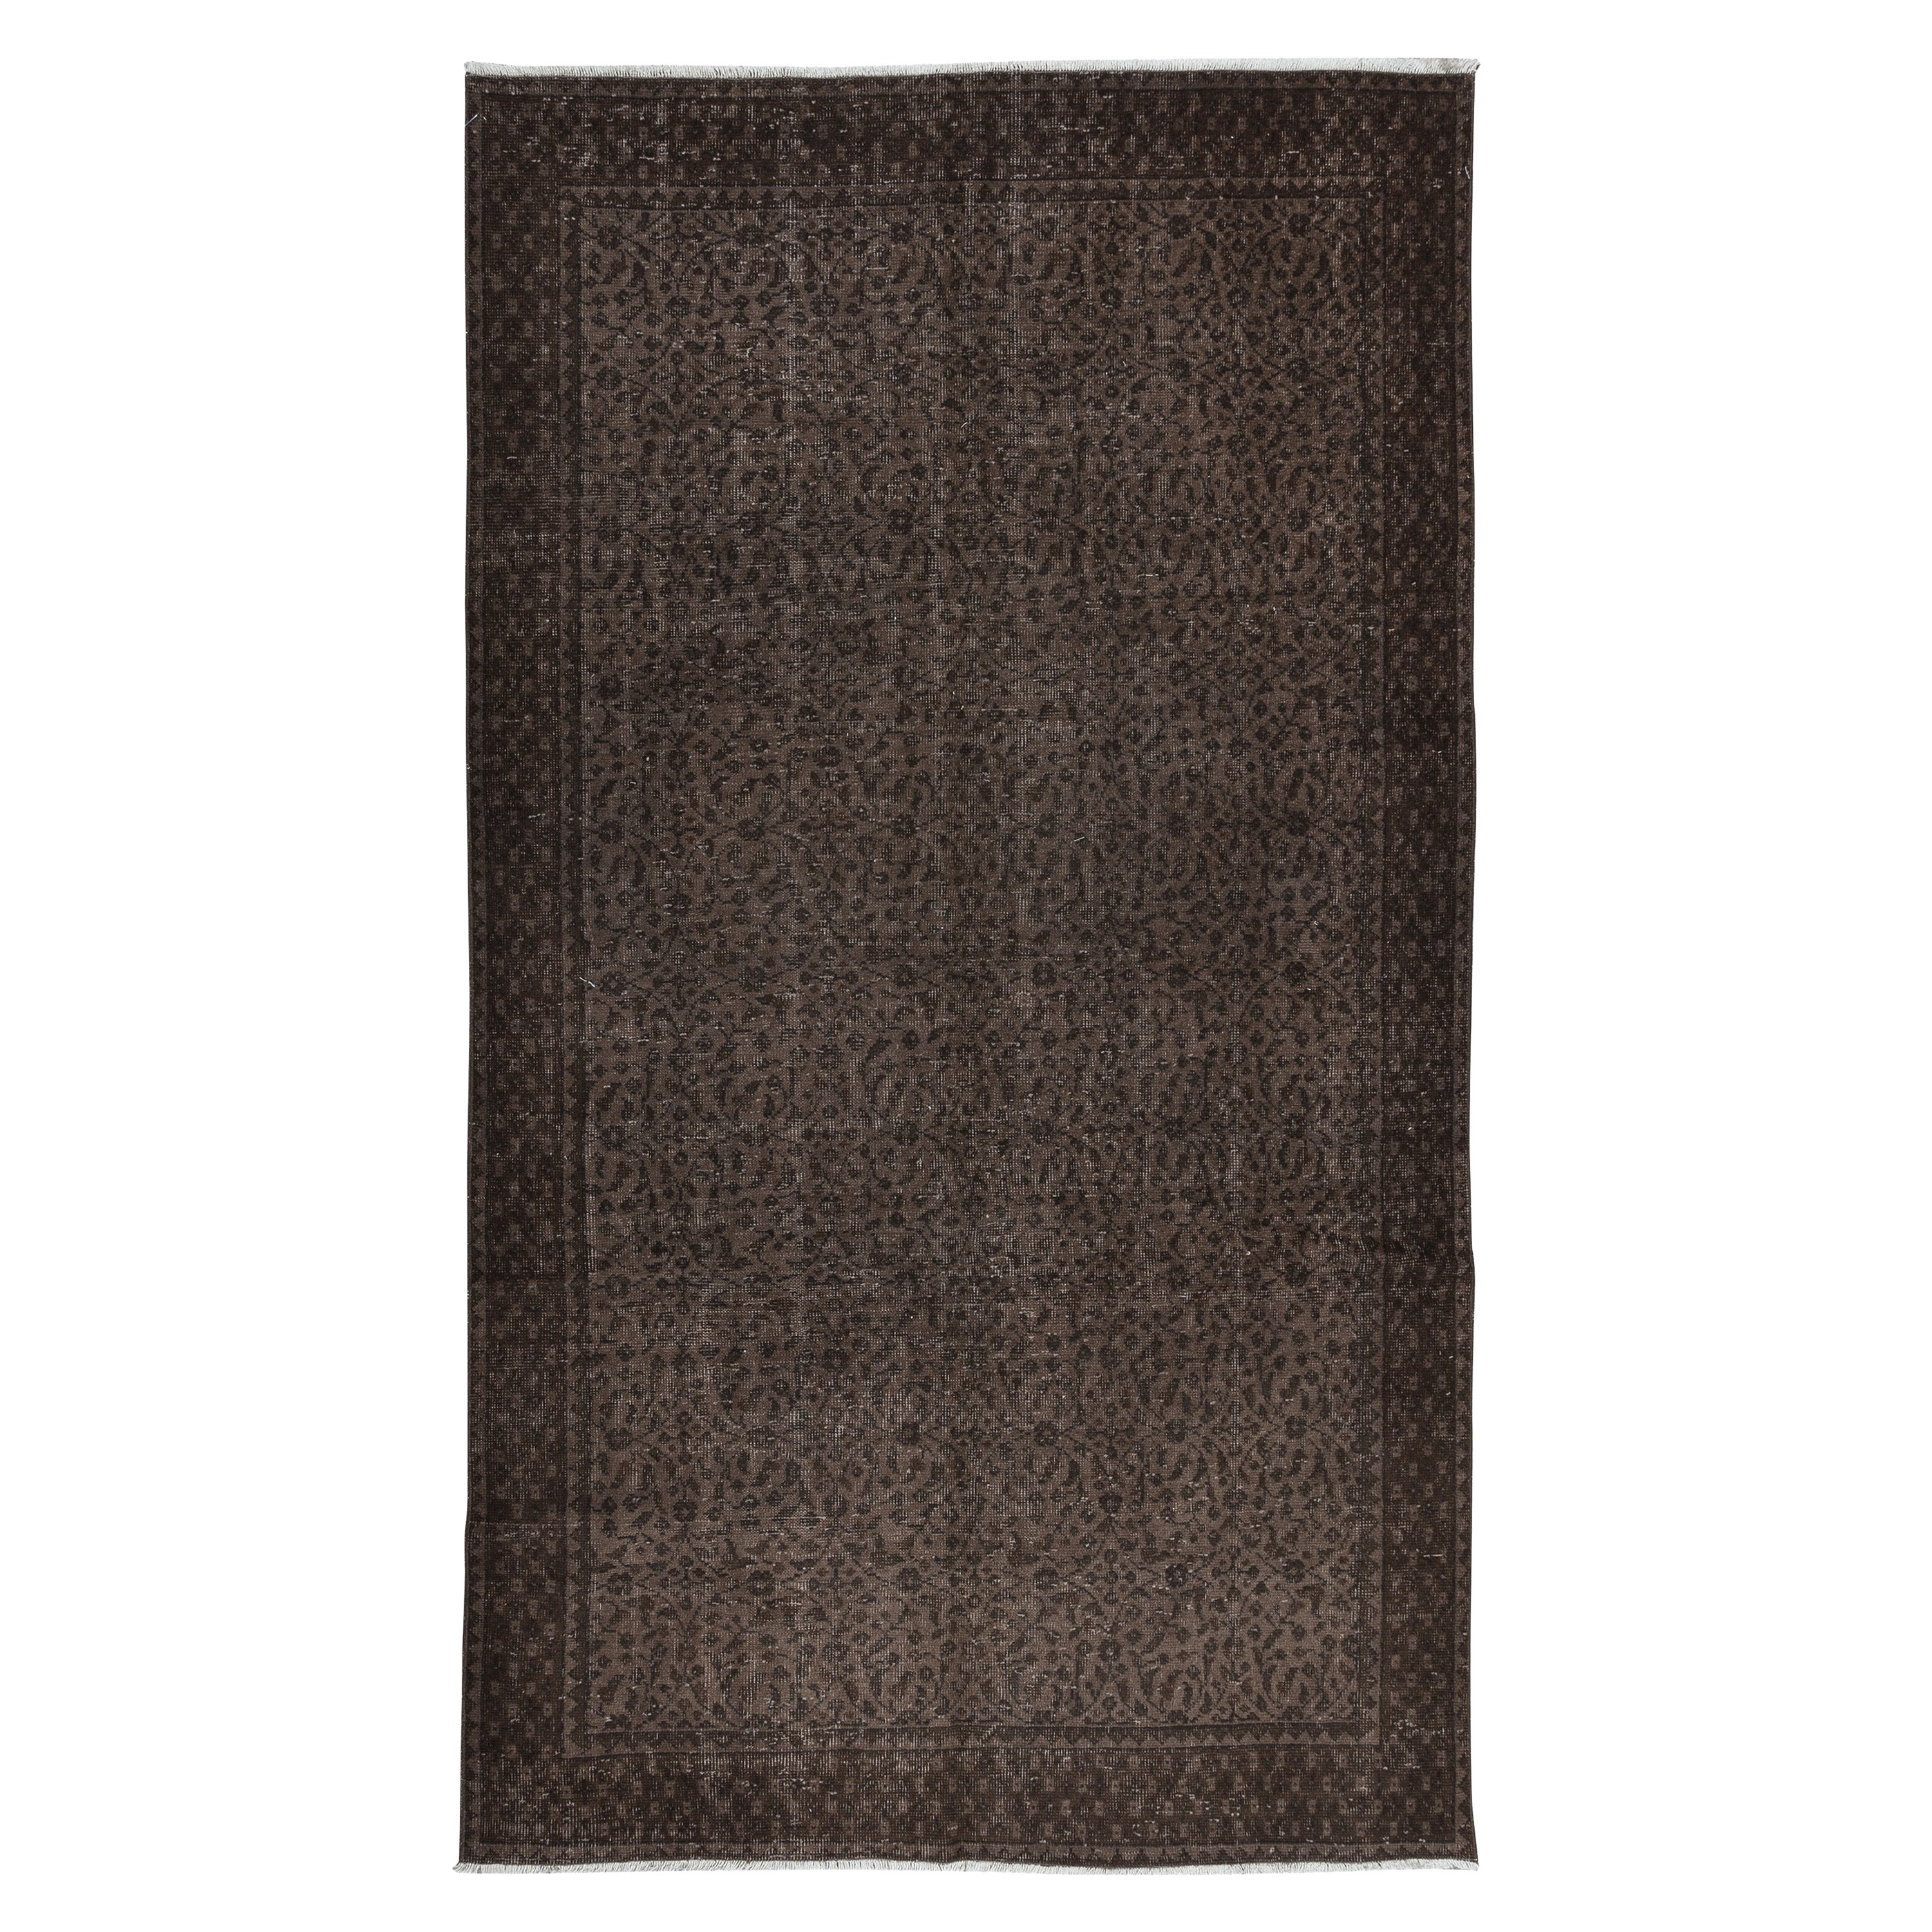 5.4x9 Ft Handmade Brown Floral Area Rug aus der Türkei, Modern Turkish Wool Carpet